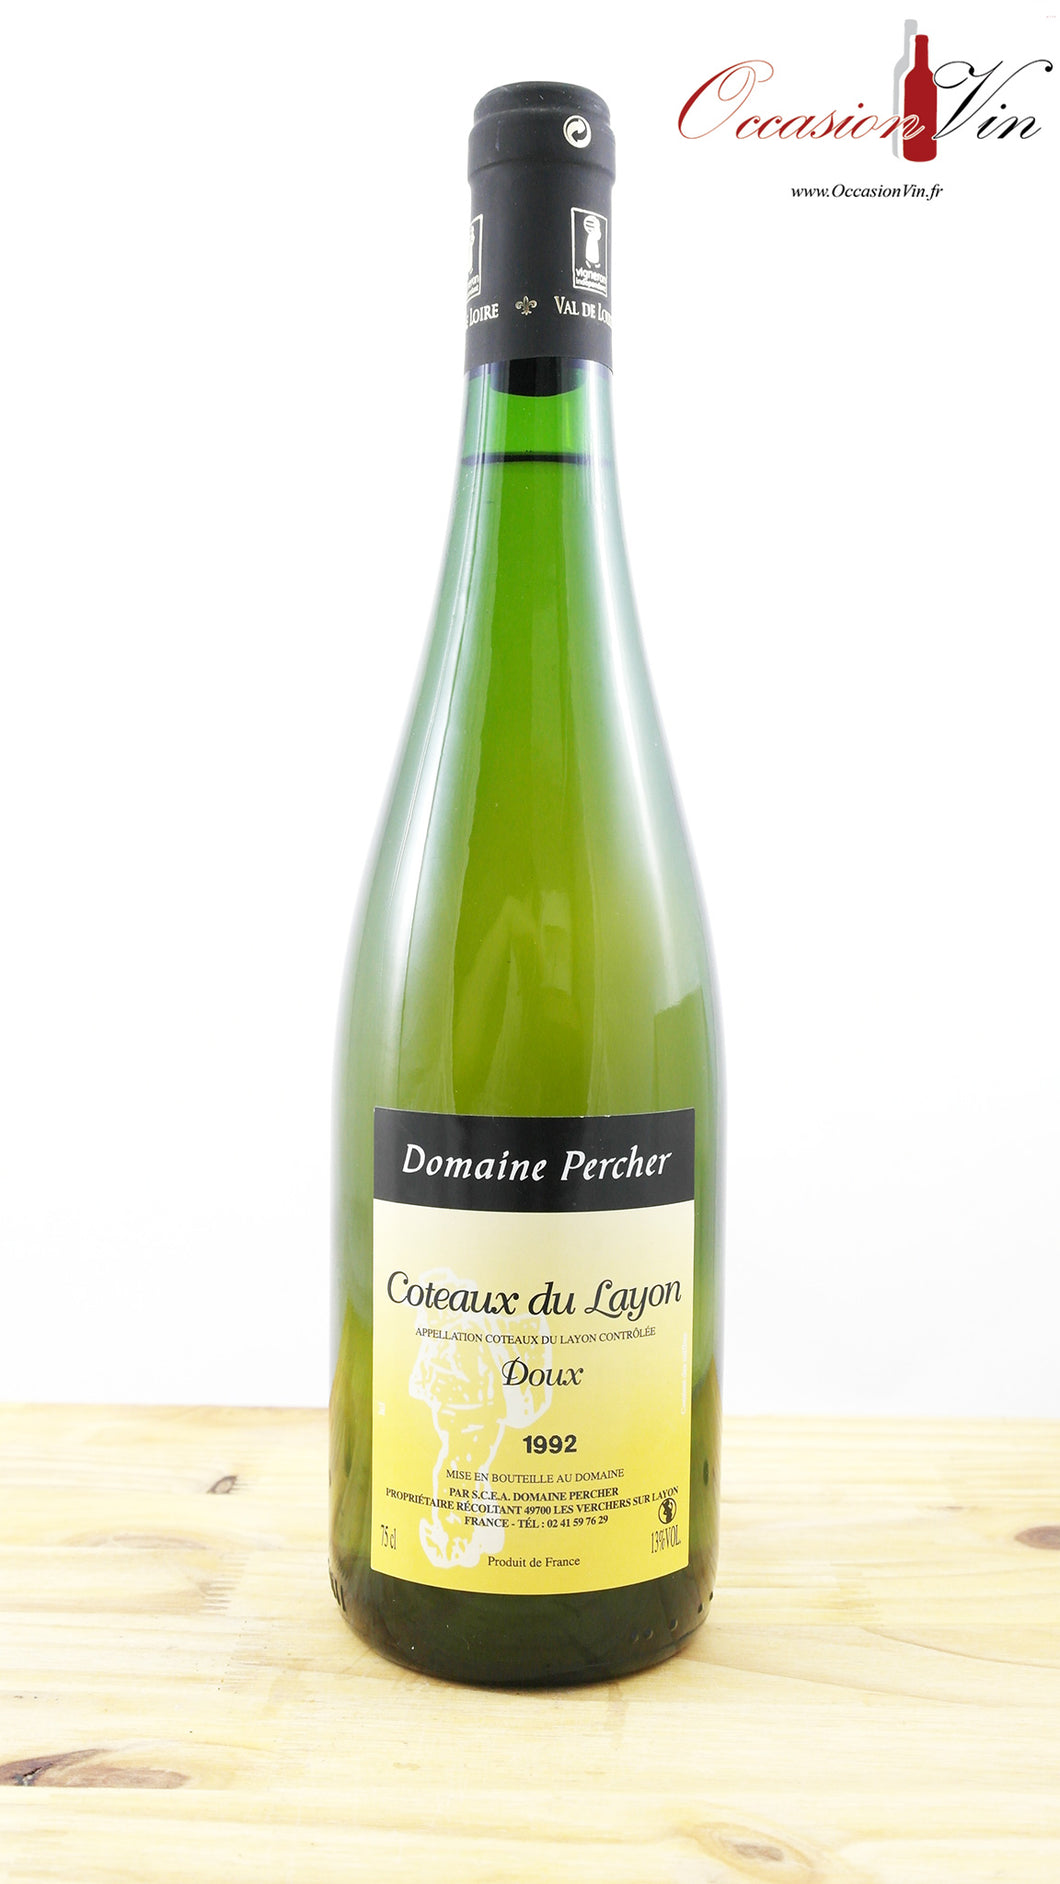 Coteaux du Layon Domaine Percher Vin 1992